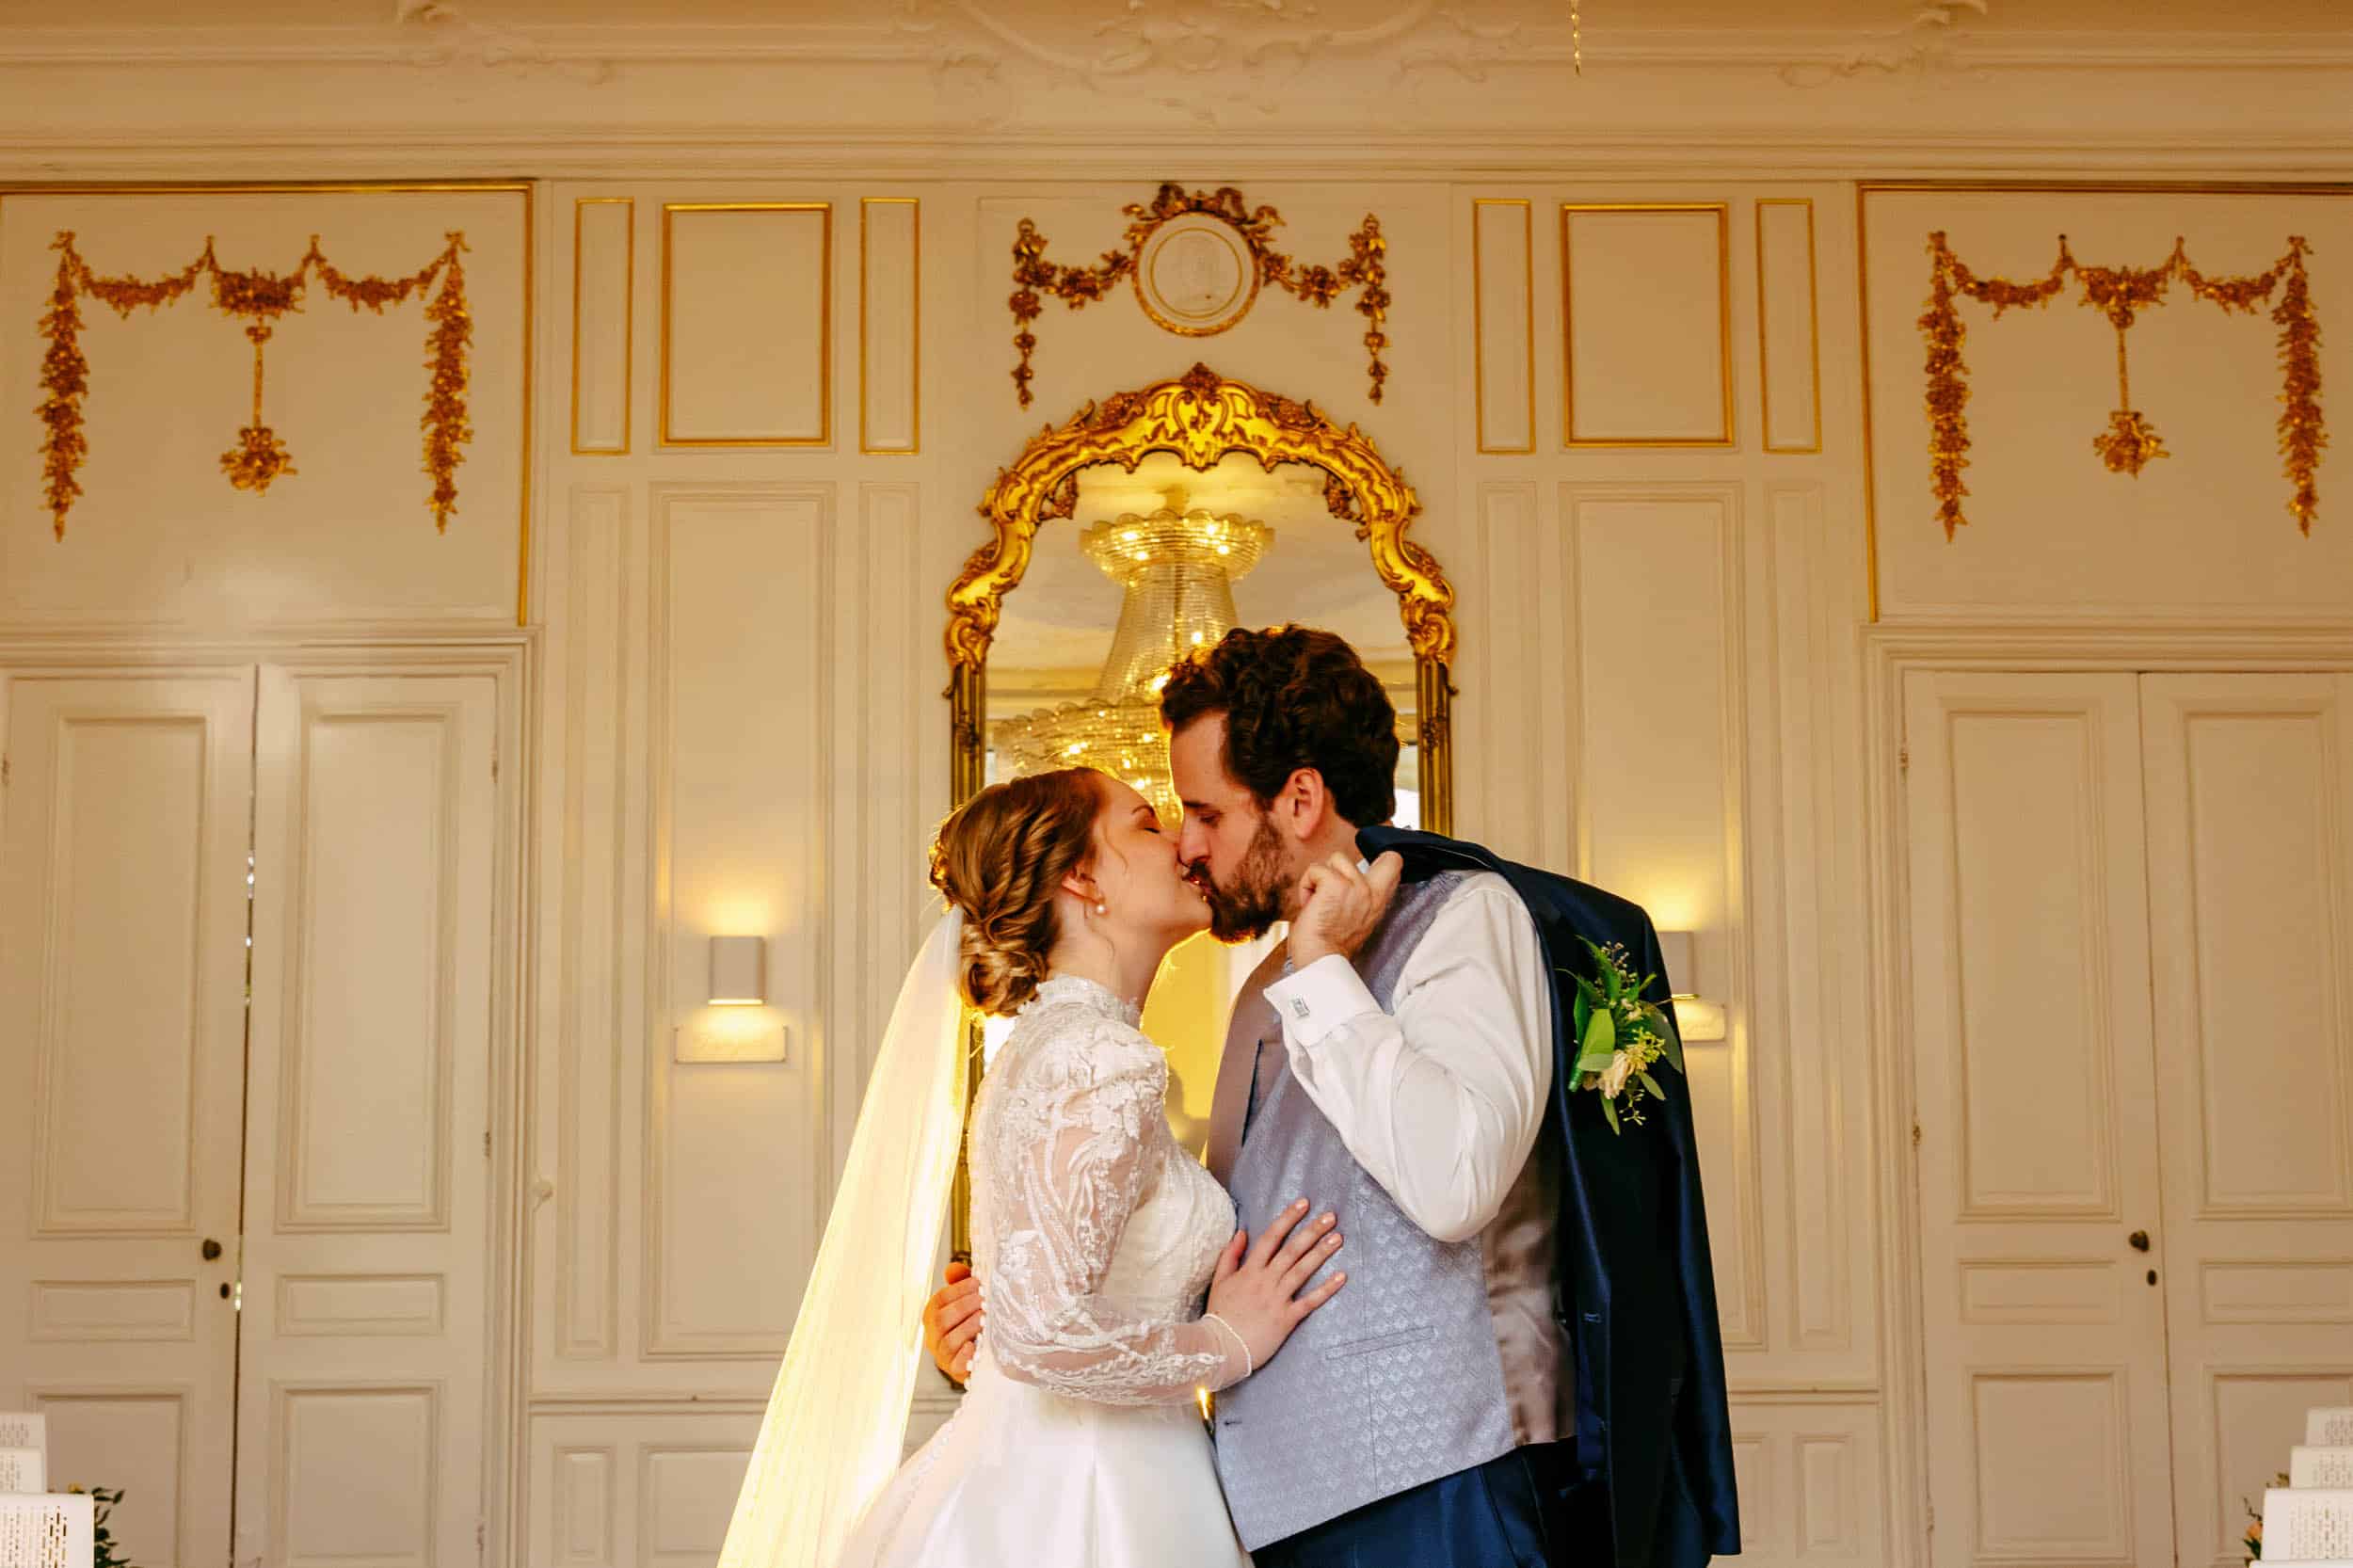 "Een bruid en bruidegom die een hartstochtelijke kus delen in een sierlijke kamer, prachtig vastgelegd door een trouwfotograaf. Deze trouwfoto geeft perfect de essentie van de perfecte bruiloft weer